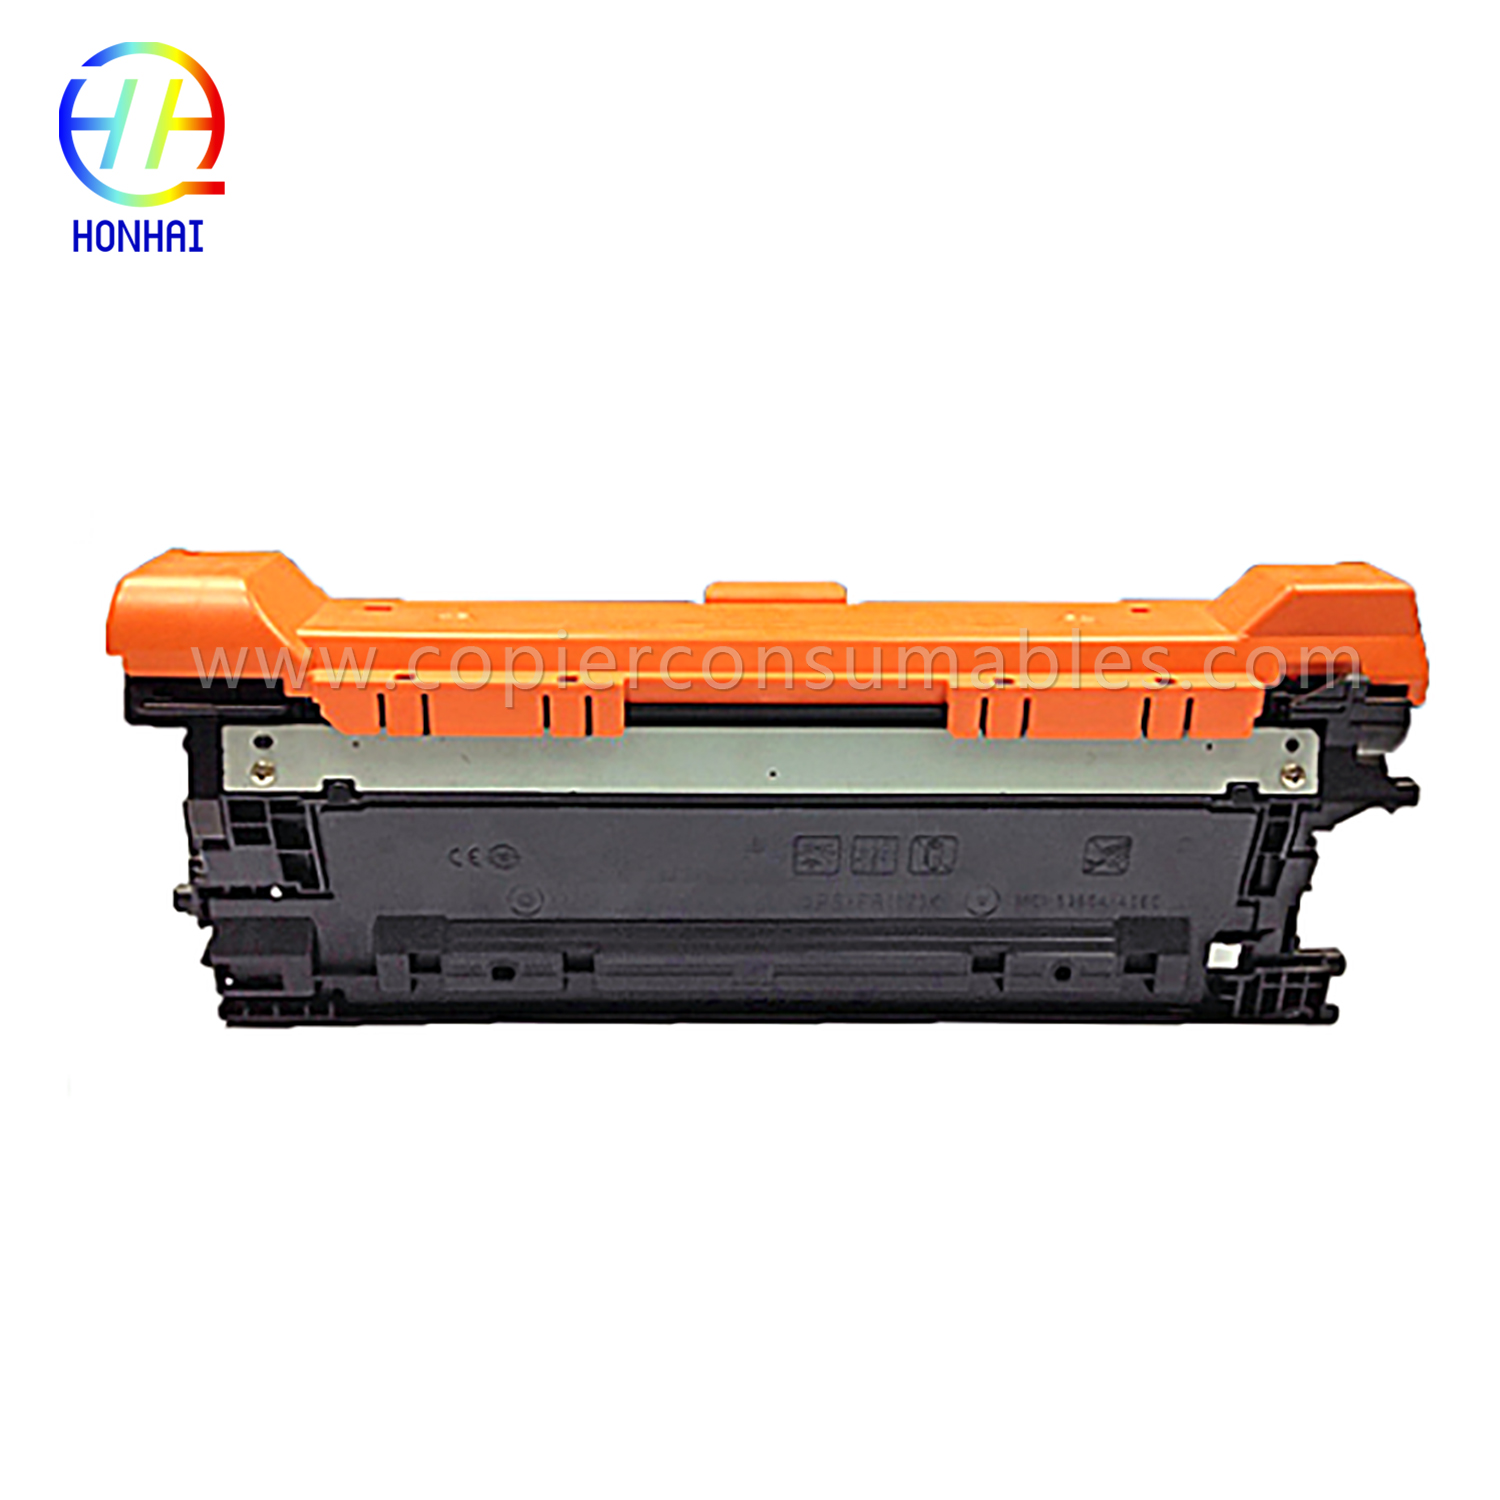 컬러 토너 카트리지 HP Color Laserjet Enterprise M552 M553 (CF362X) -1 拷贝